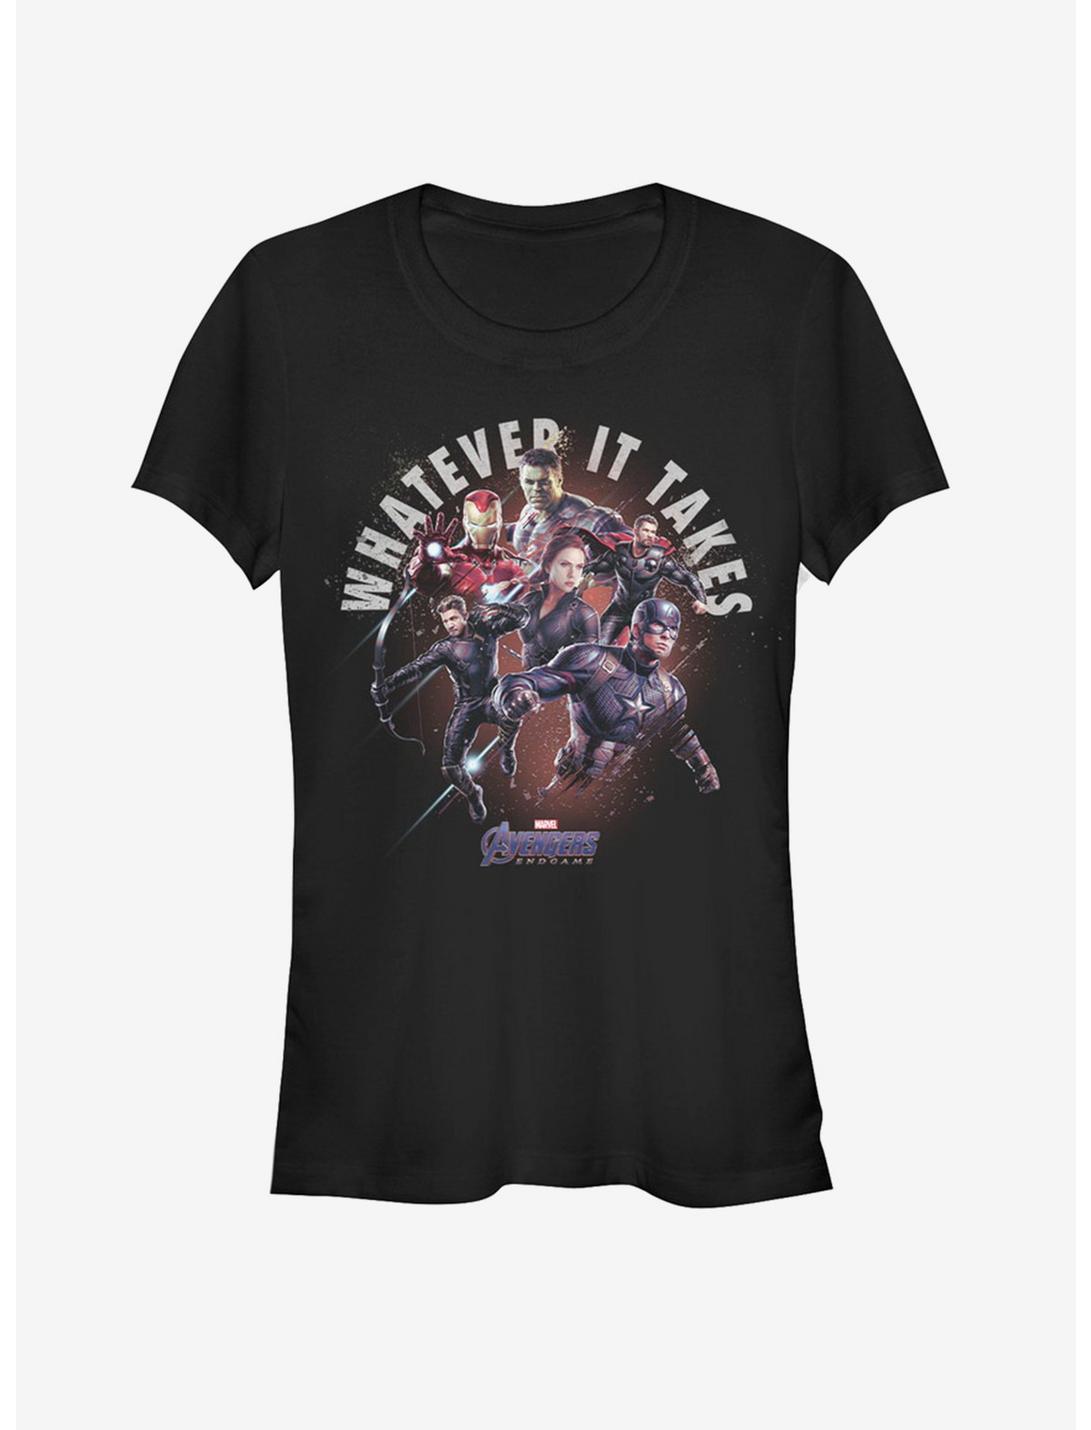 Marvel Avengers Endgame Heroes Sacrifice Girls T-Shirt, BLACK, hi-res